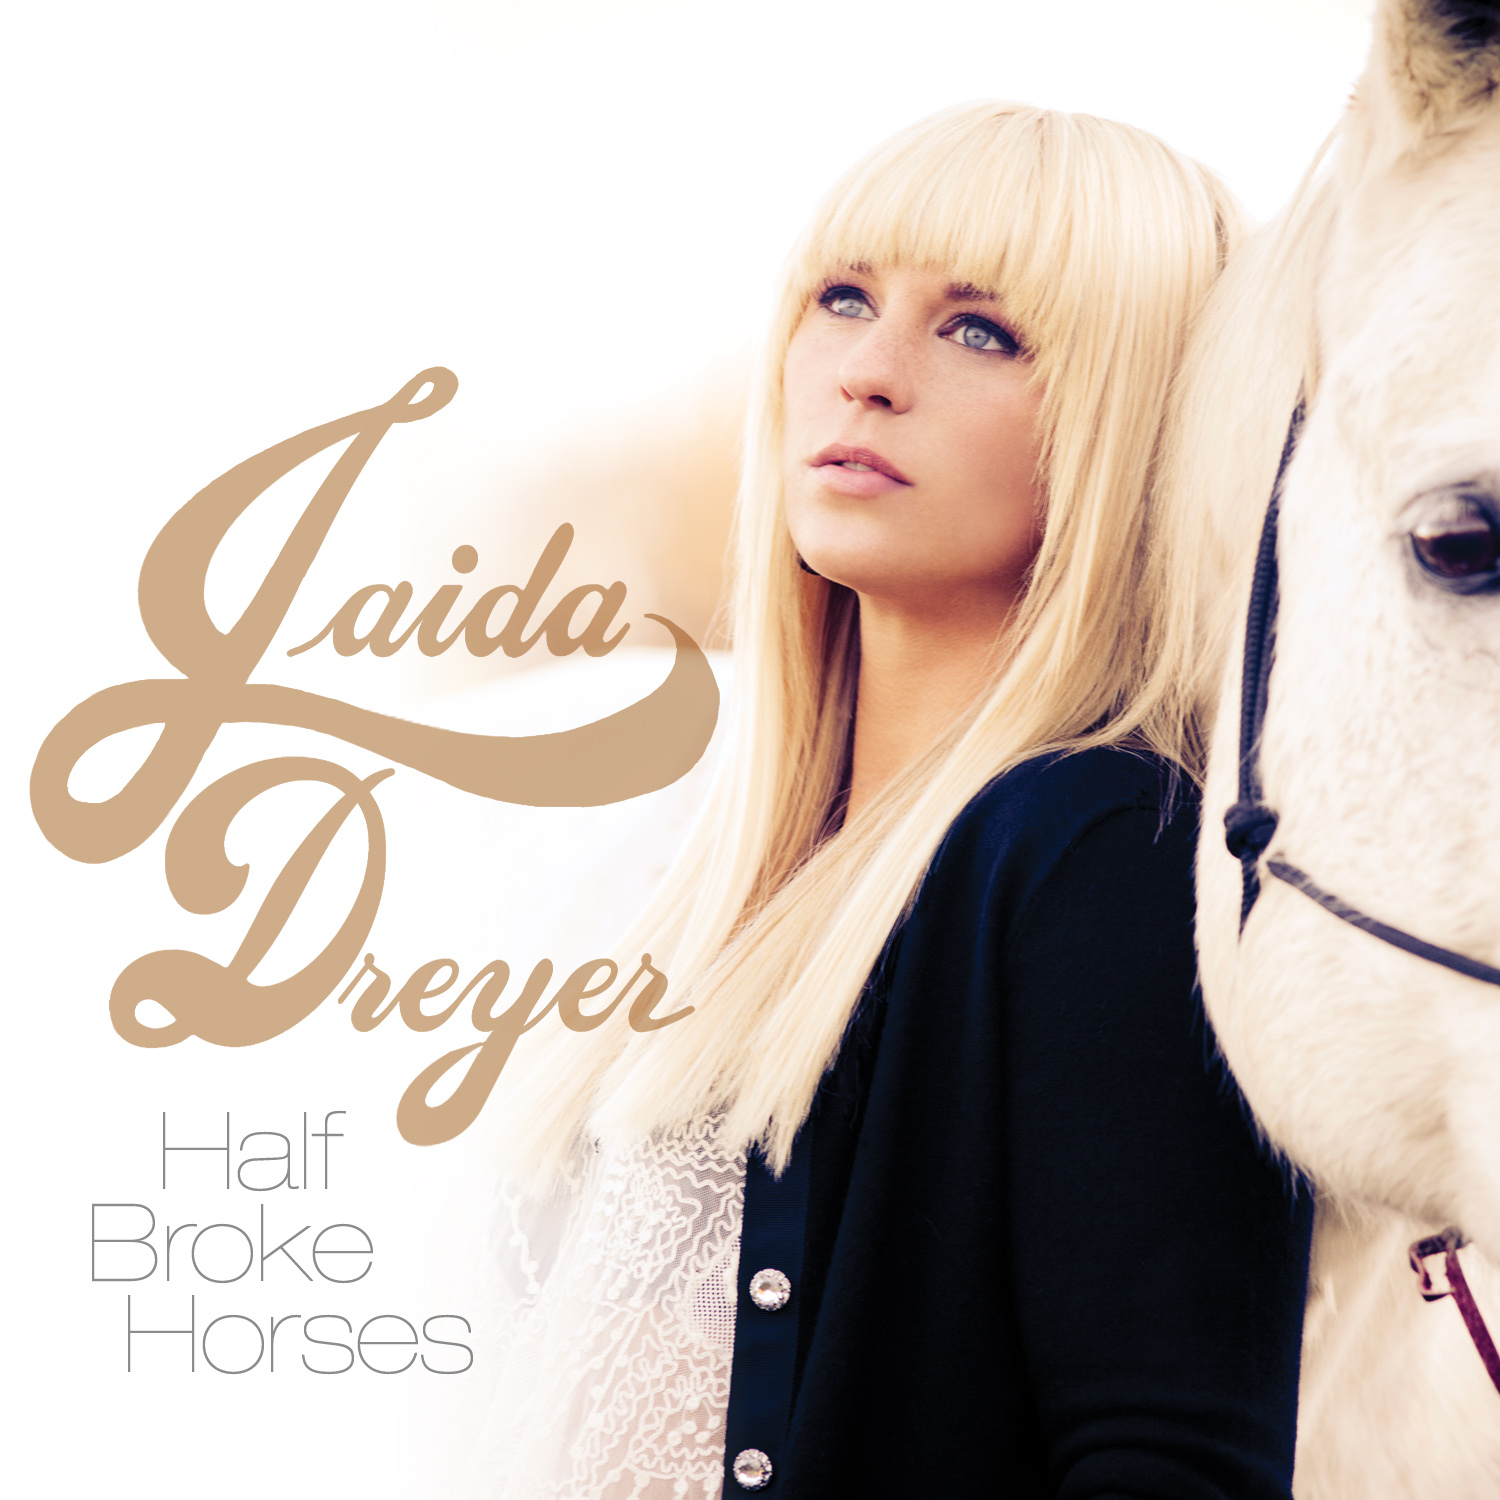 Самая красивая лошадь в мире. Лошадь группа вау. I am Jaida Dreyer джайда Дрейер. 24 Horses группа Американа. Хорс групп